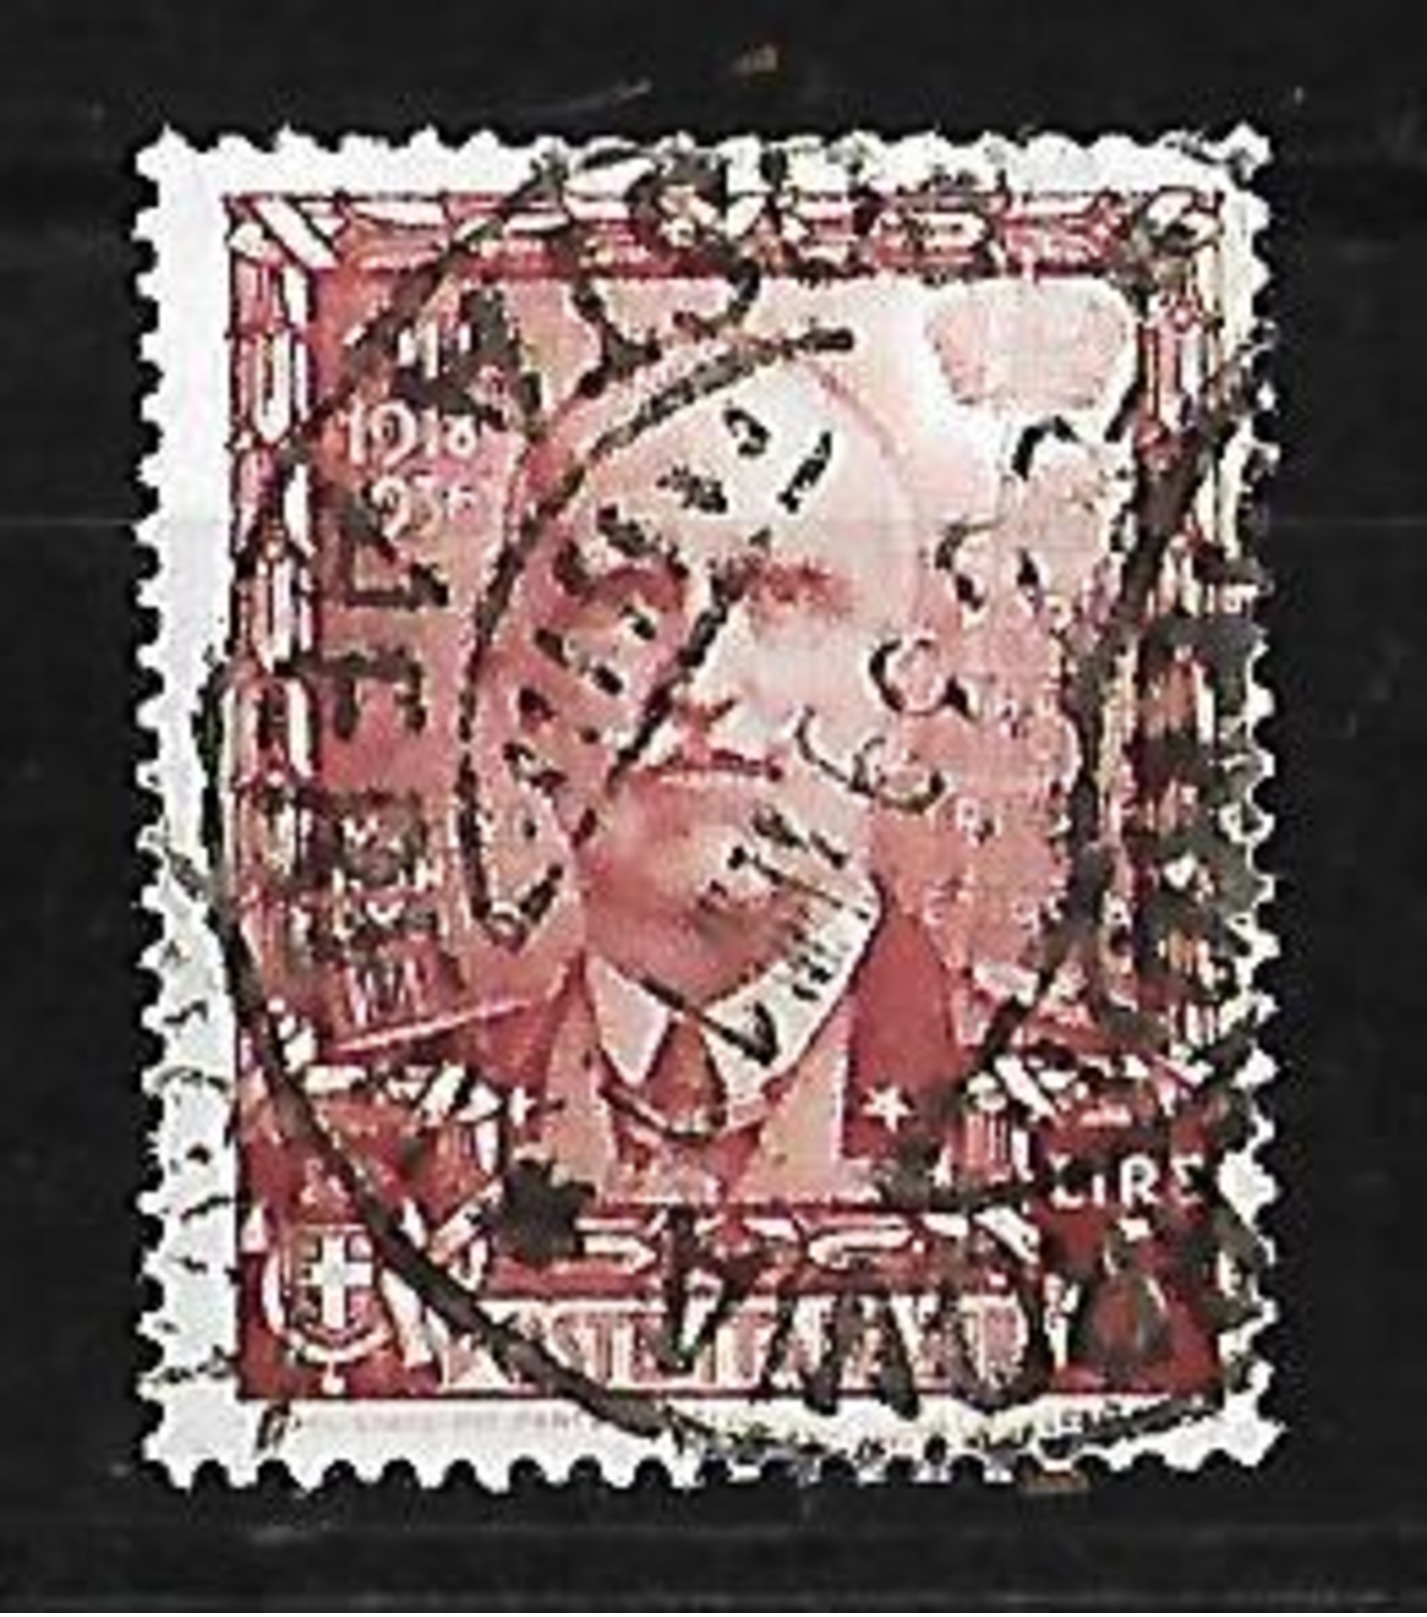 ITALIA 1938. EFIGIE DE VICTOR MANUEL III - Usados